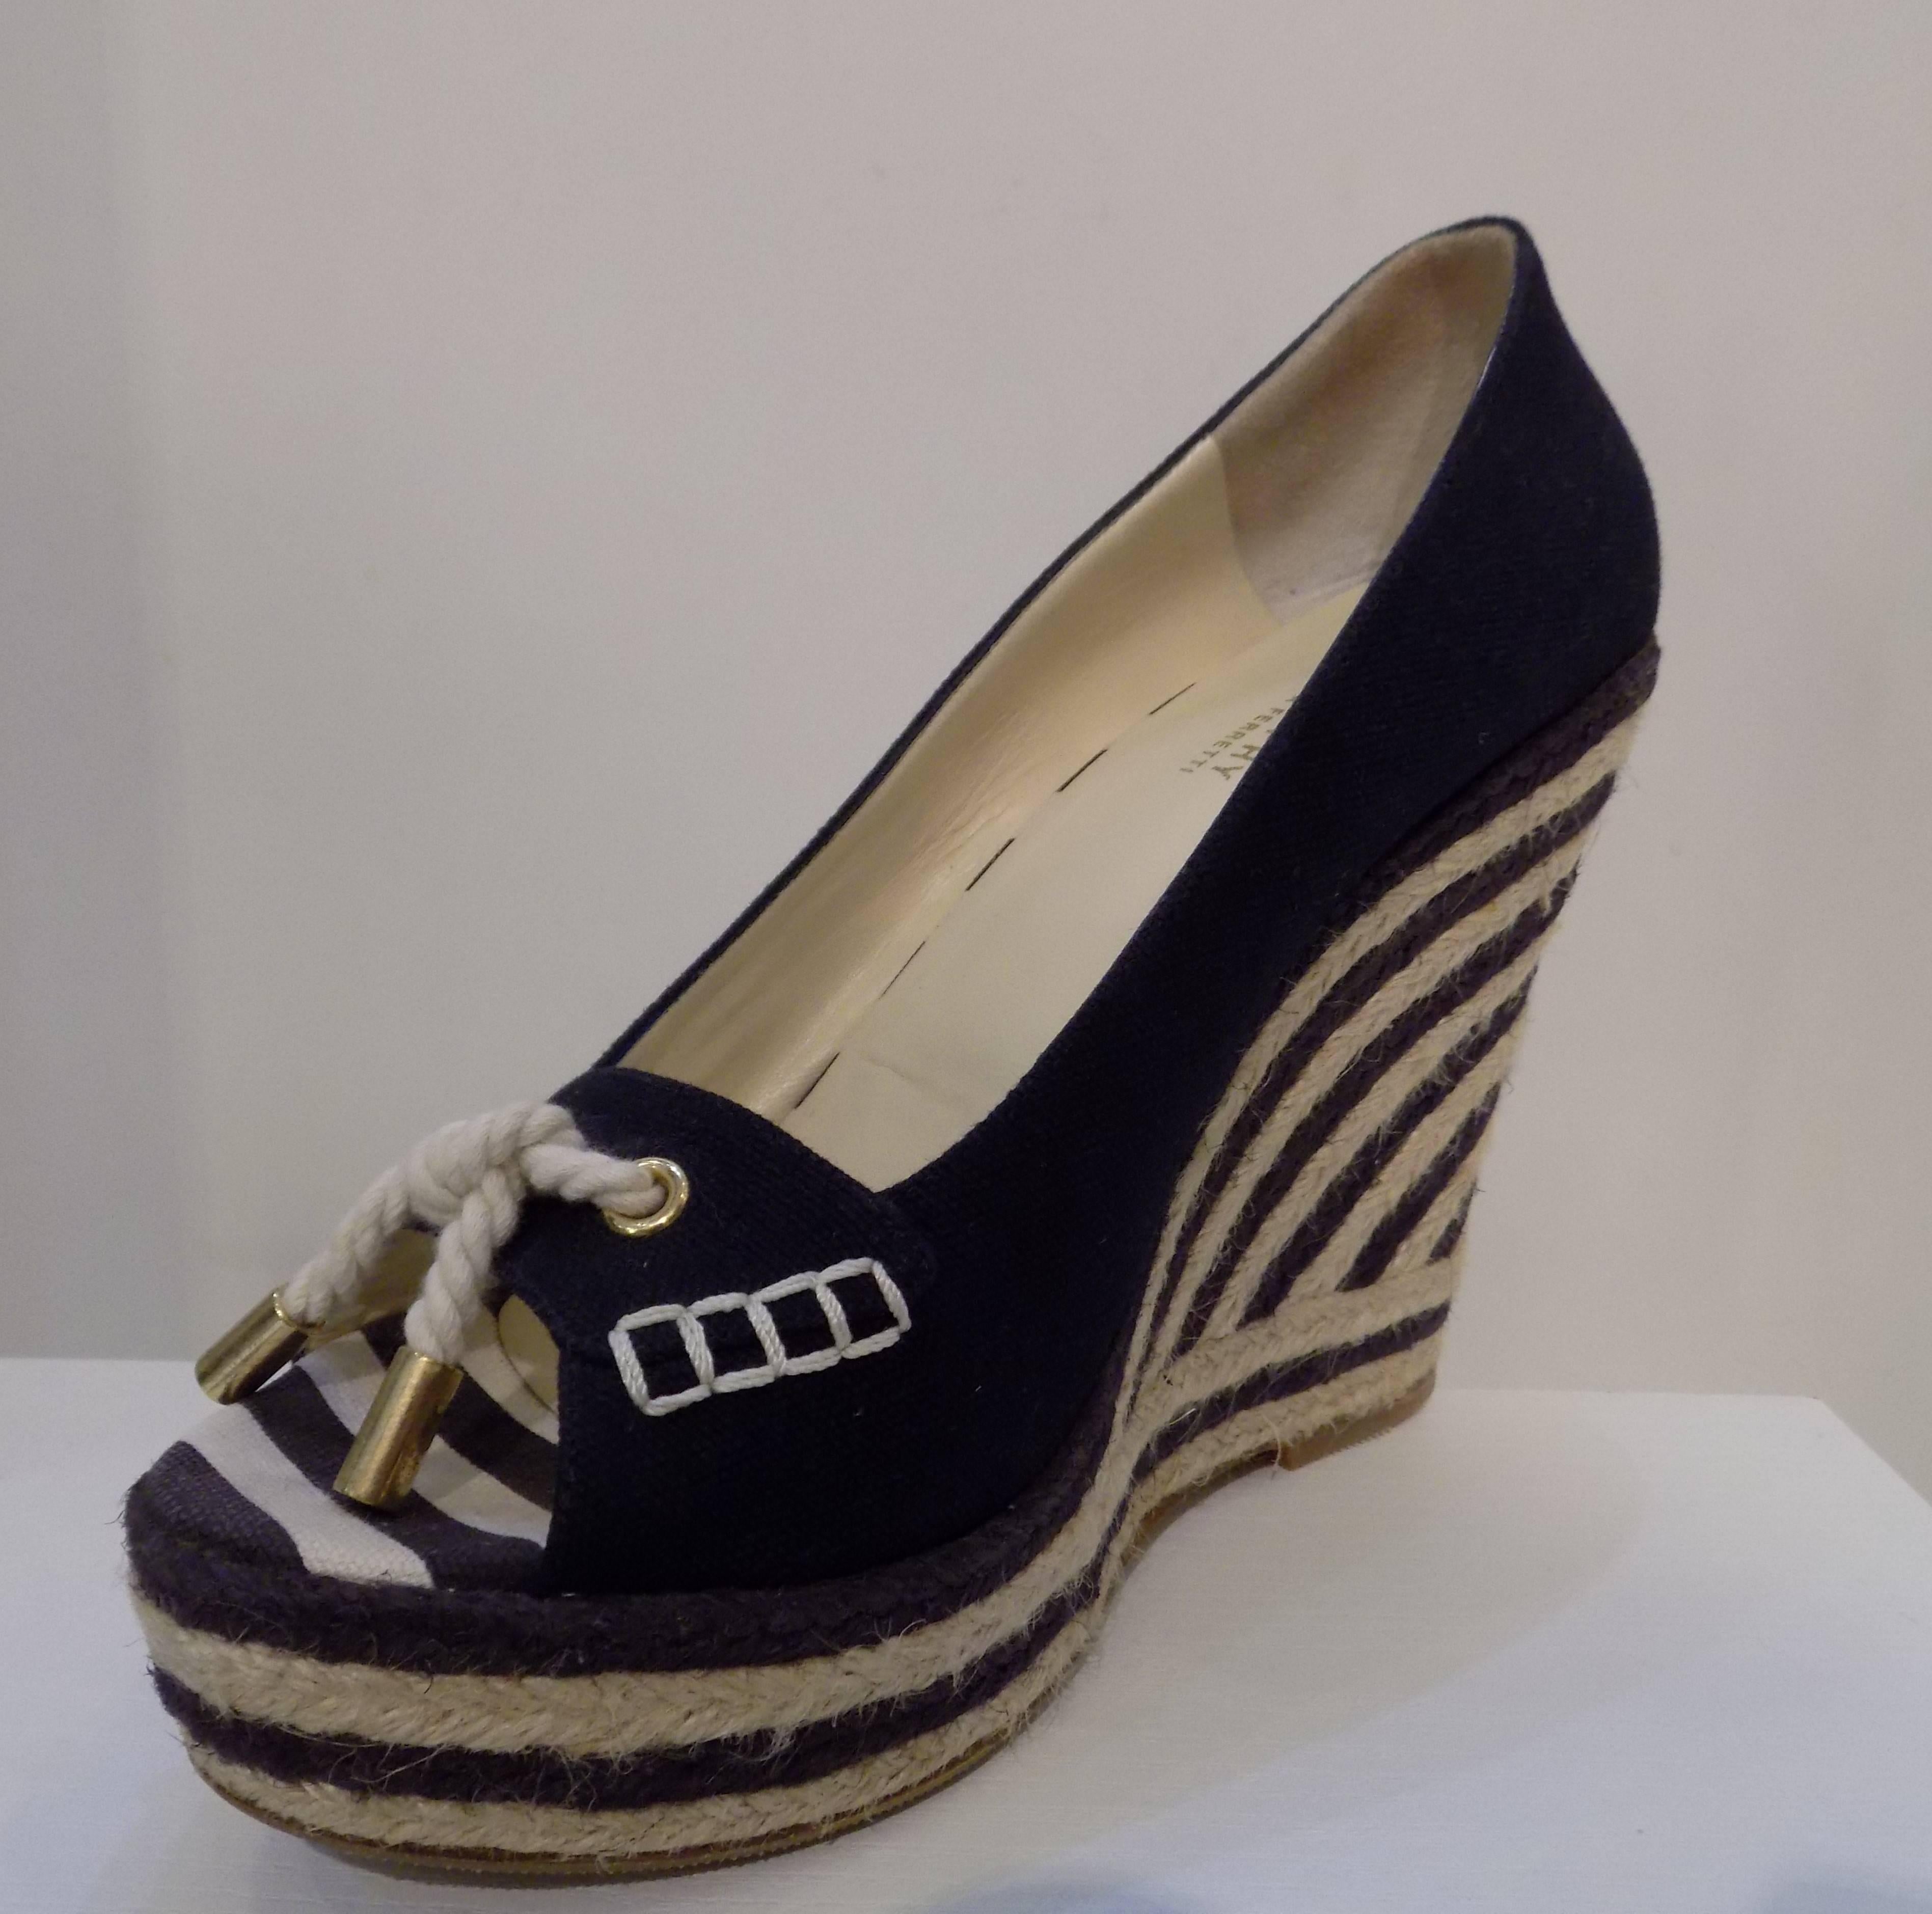 Philosophy by Alberta Ferretti Wedge Shoes
Size: 39 in italian size range
Heel: 13 cm